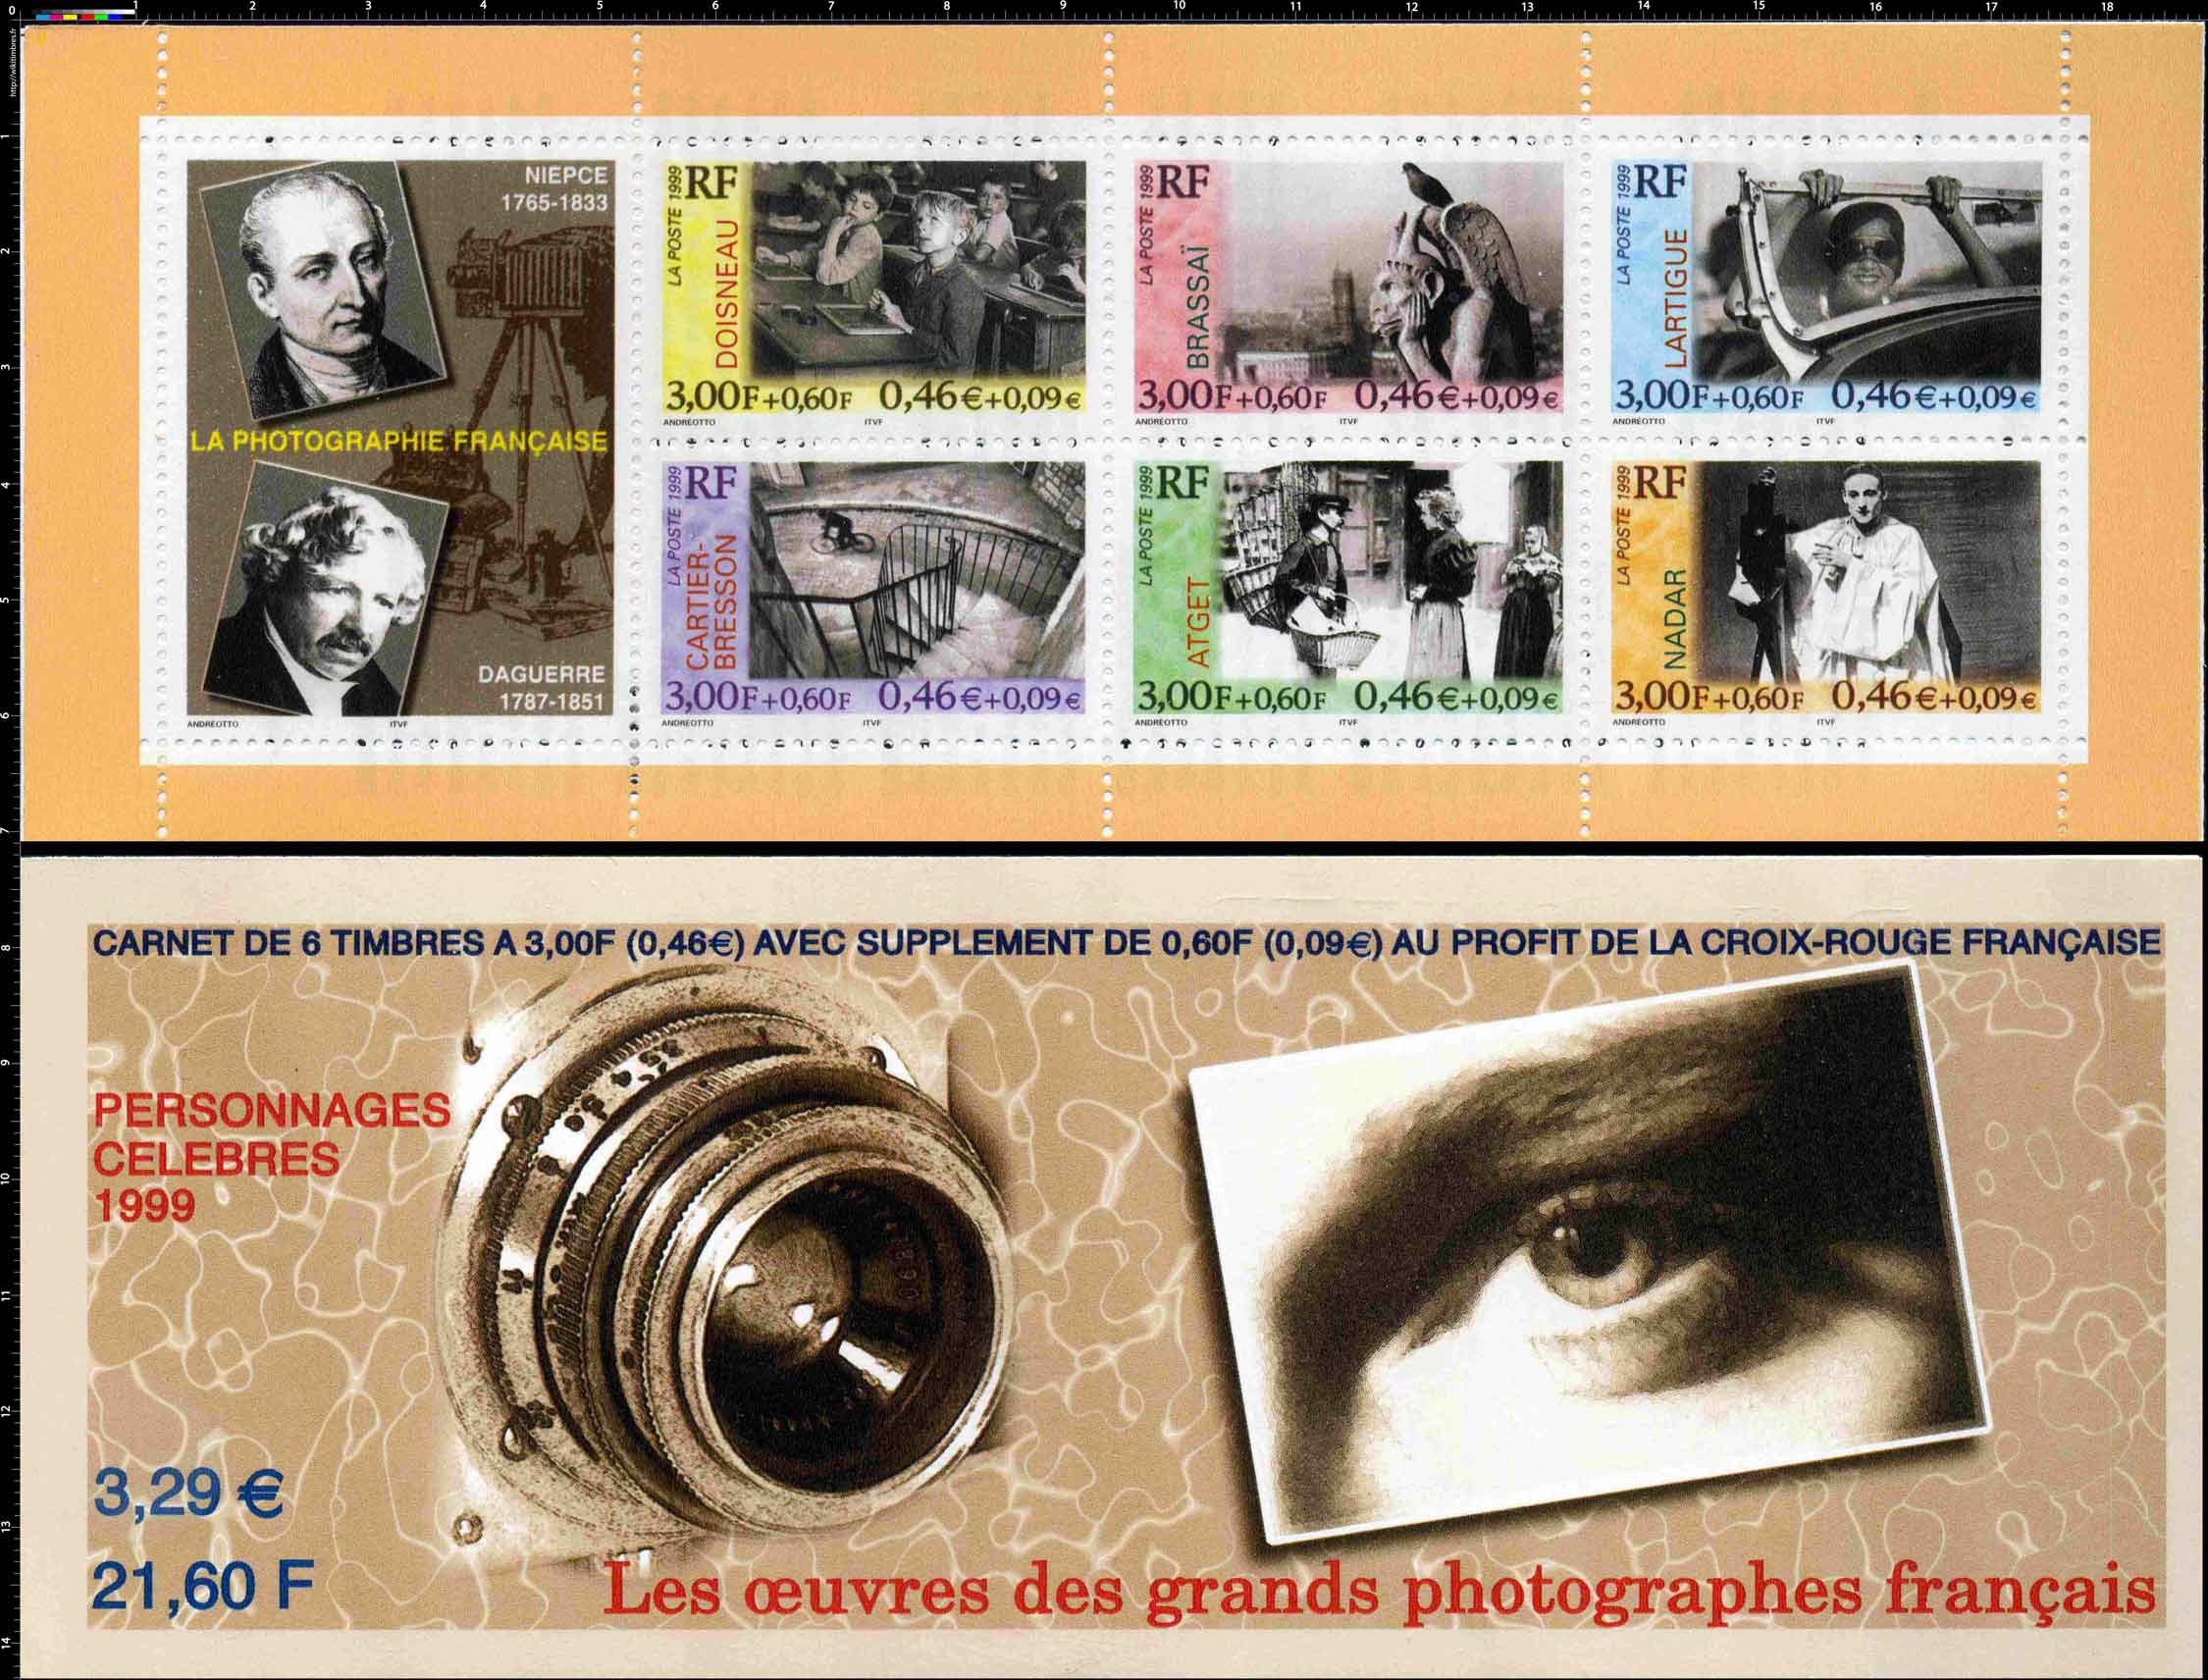 1999 Les œuvres des grands photographes français